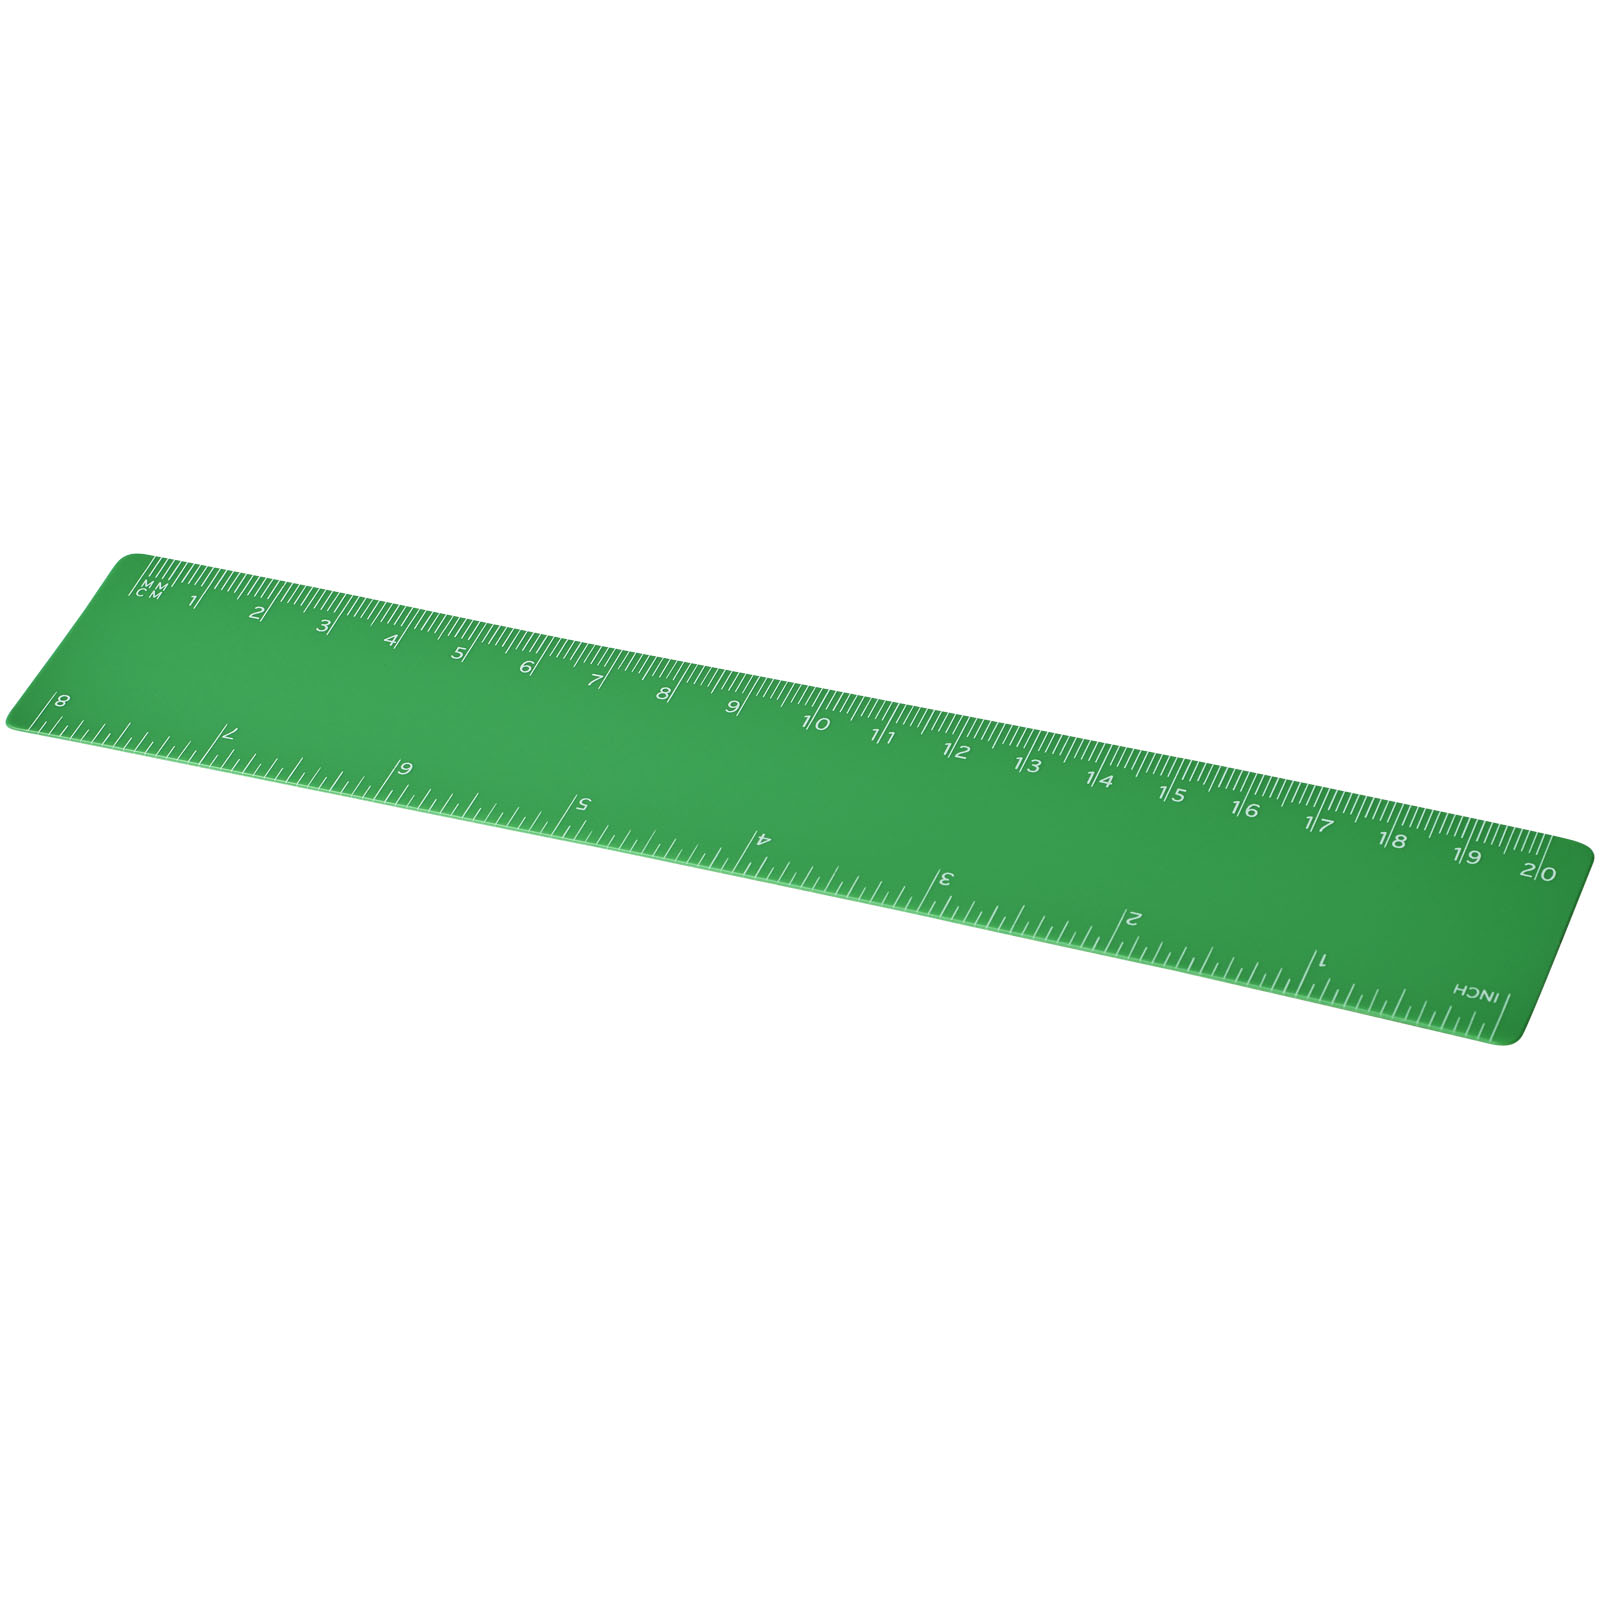 Advertising Desk Accessories - Rothko 20 cm plastic ruler - 0